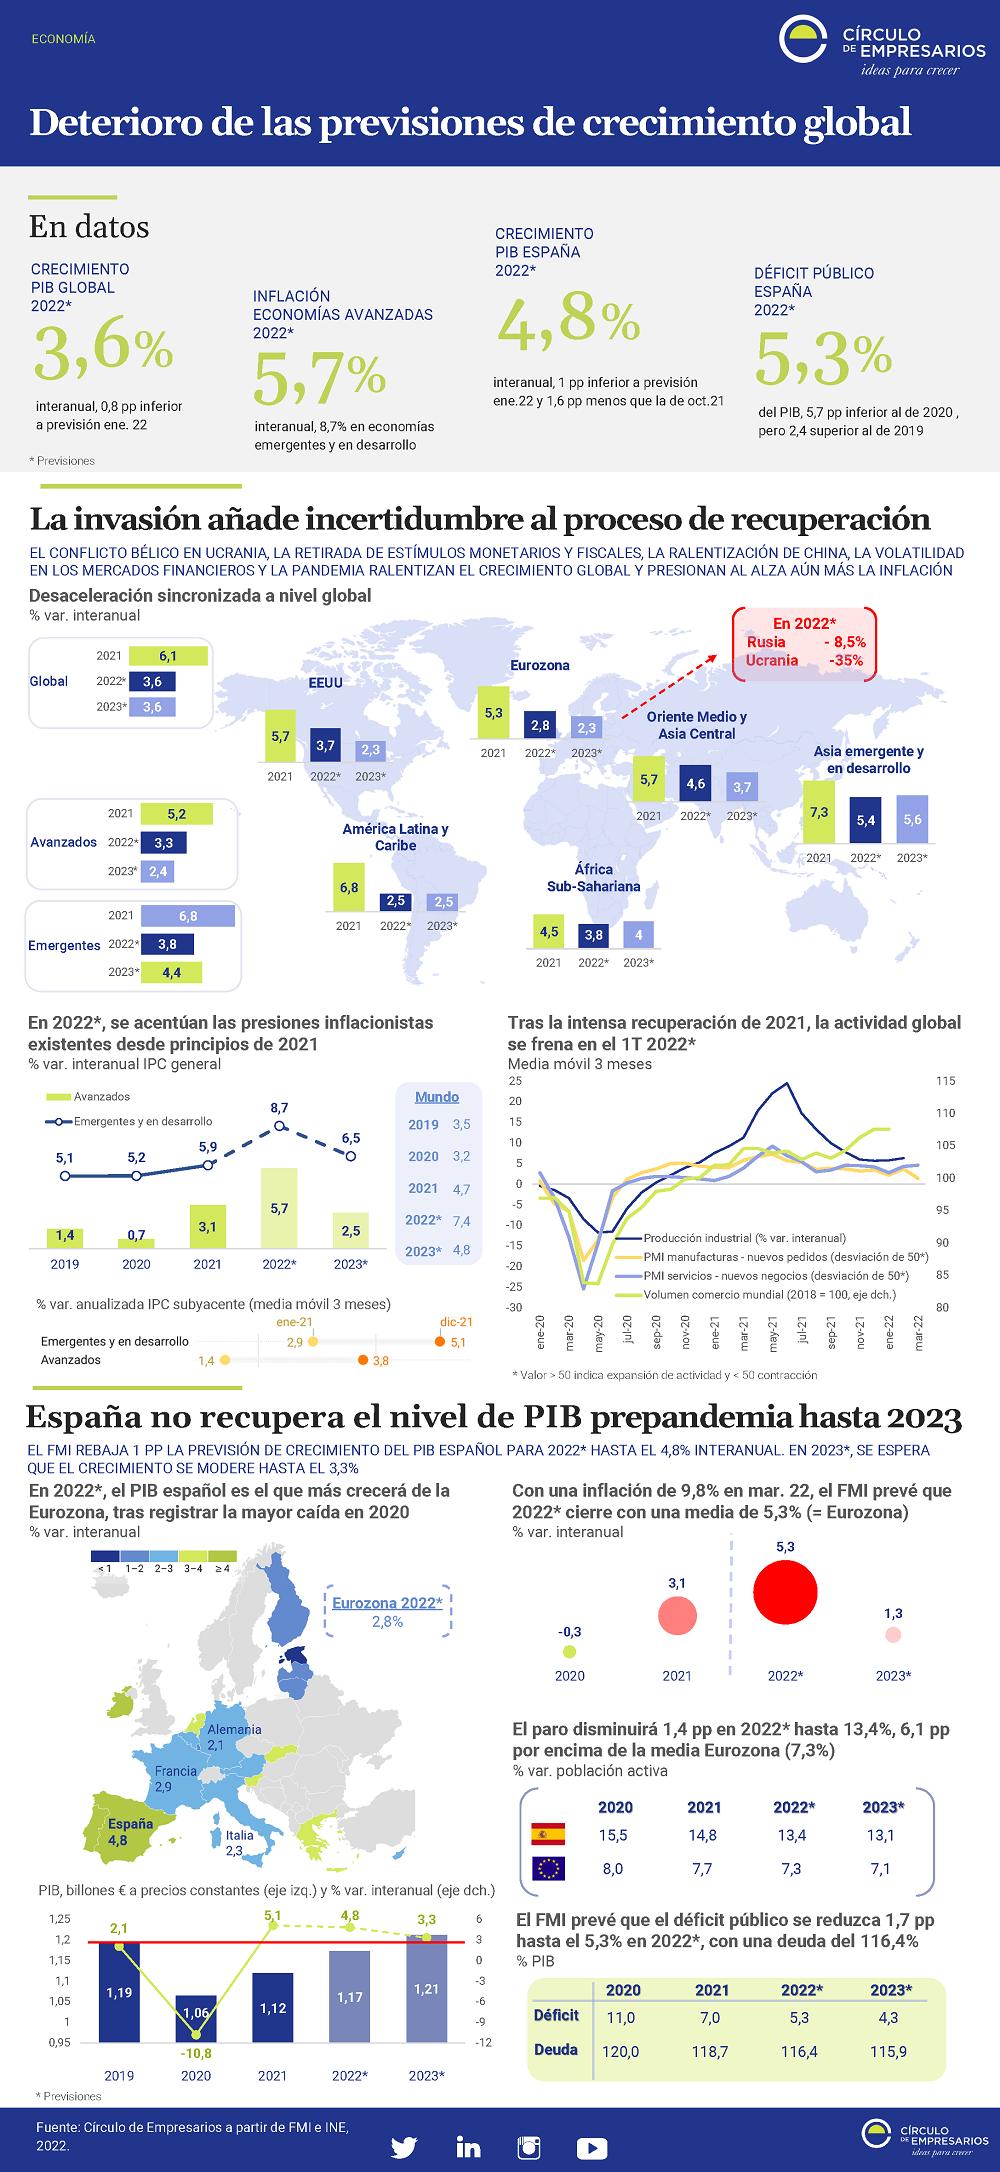 Deterioro-de-las-previsiones-de-crecimiento-global-infografia-abril-2022-Circulo-de-Empresarios